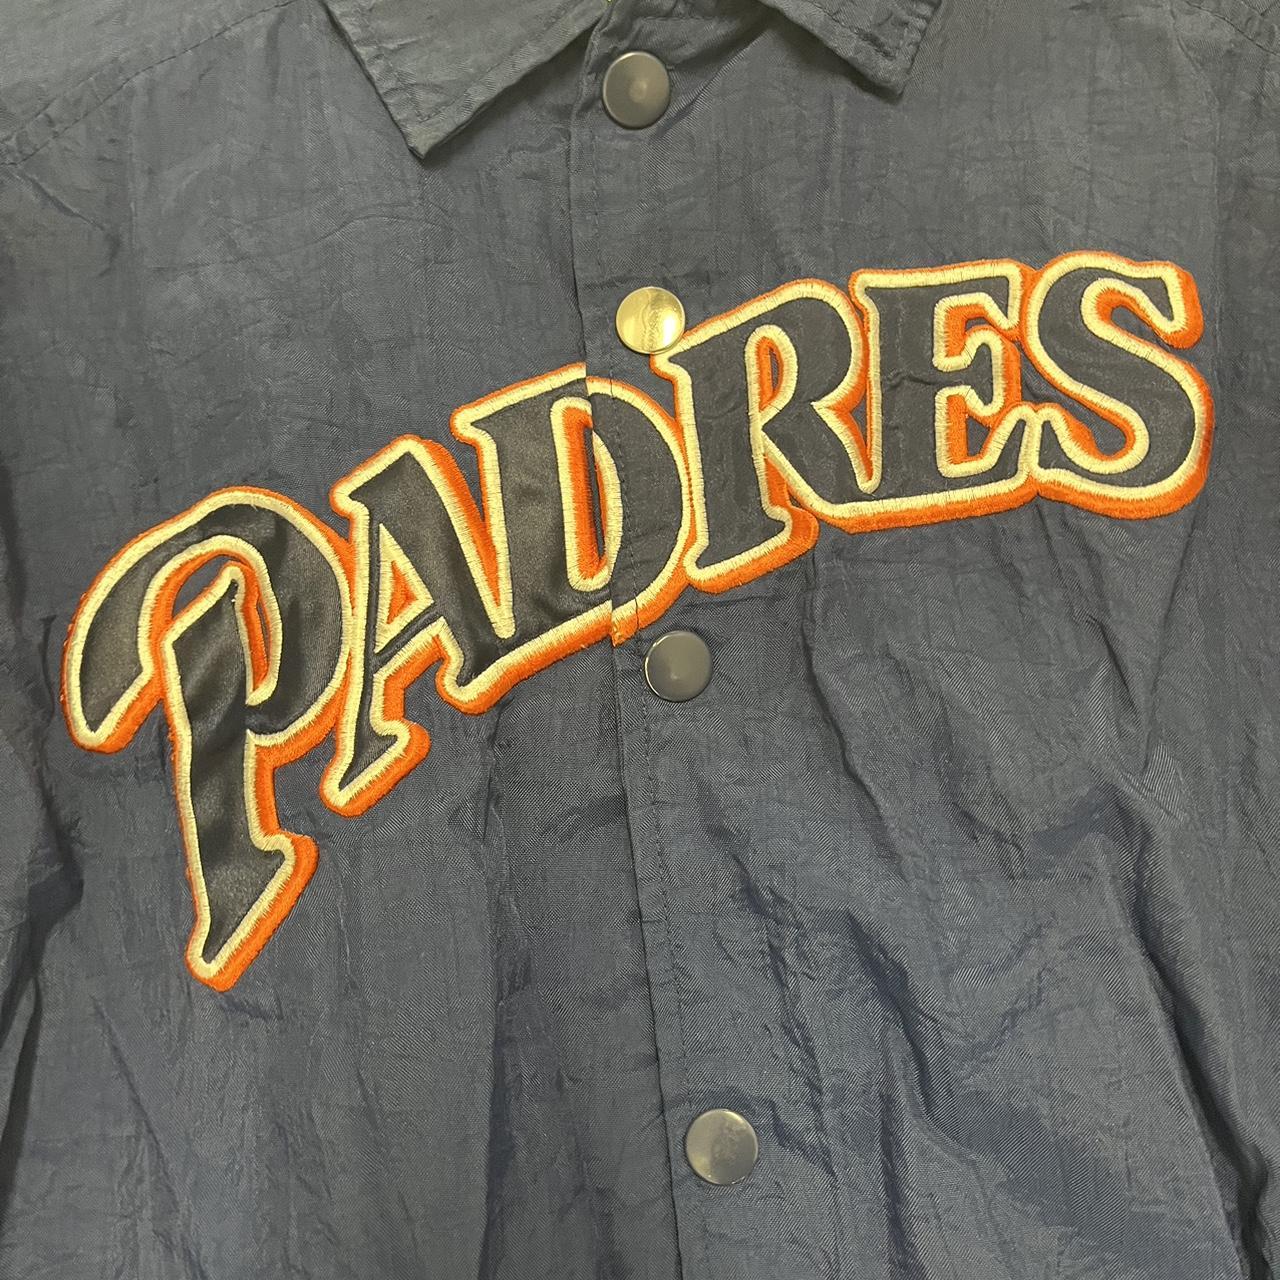 STARTER, Other, Starter Padres Vintage Jersey